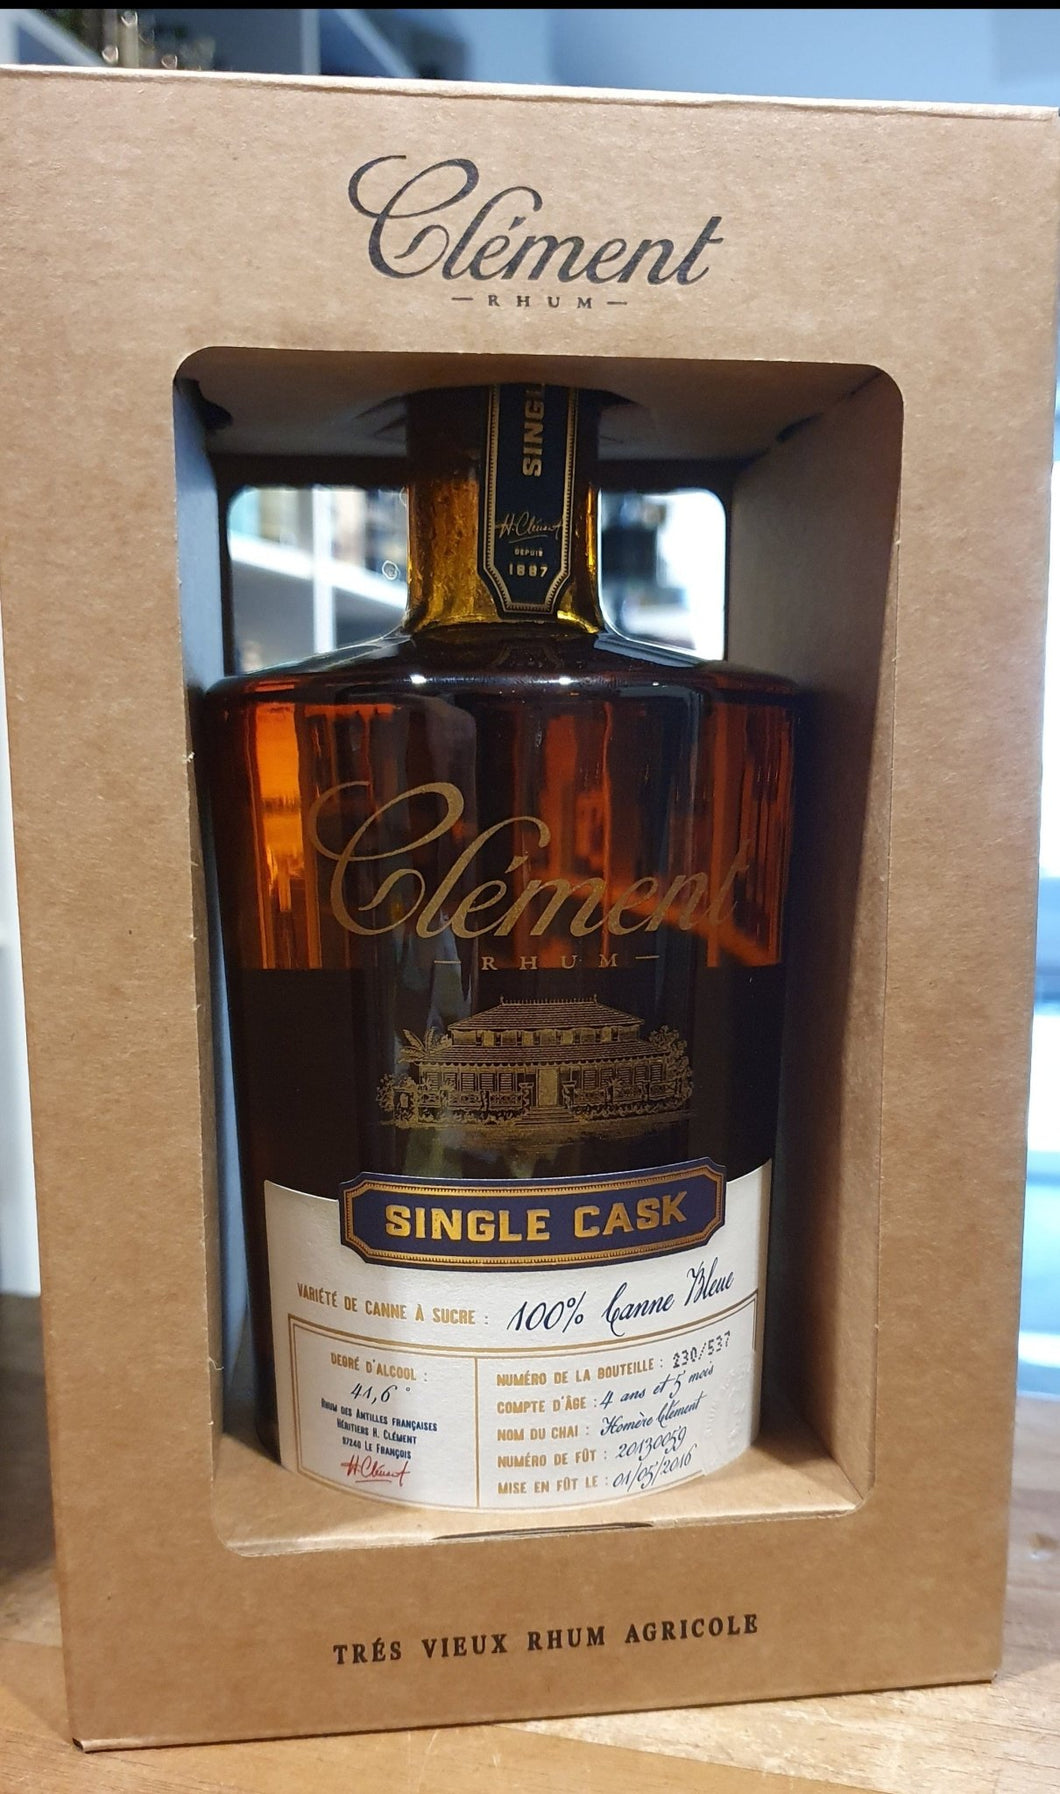 Clement 100% Canne bleue 2016 Tres Vieux Rhum Agricole 41,6% vol. 0,5l Rum Martinique Rhum Single cask limitiert auf 537 flaschen 